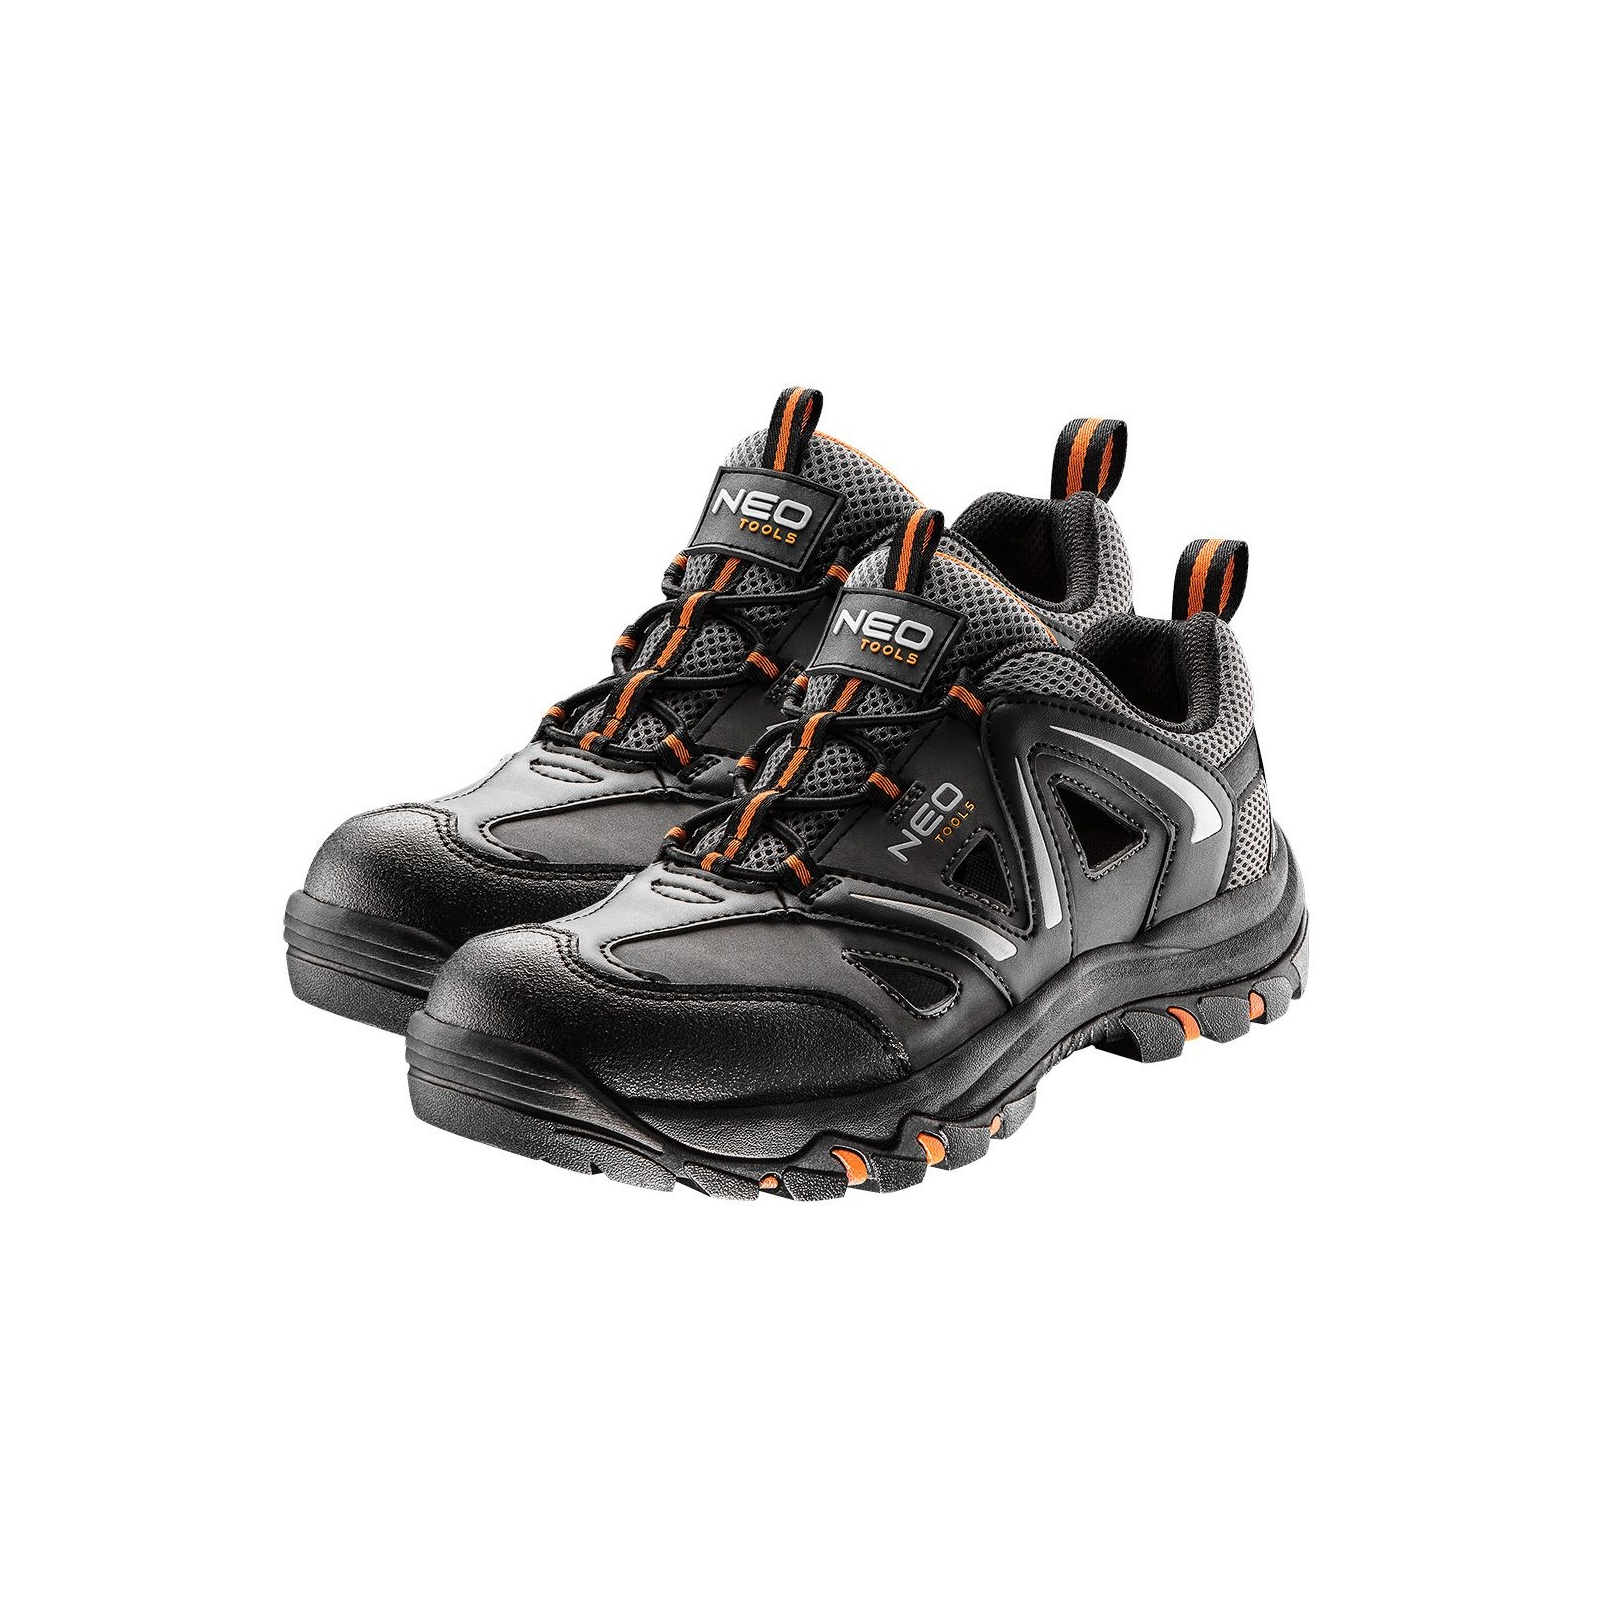 Ботинки рабочие Neo Tools кроссовки дышащие, подошва EVA, класс защиты OB, SRA, р.41 (82-722)